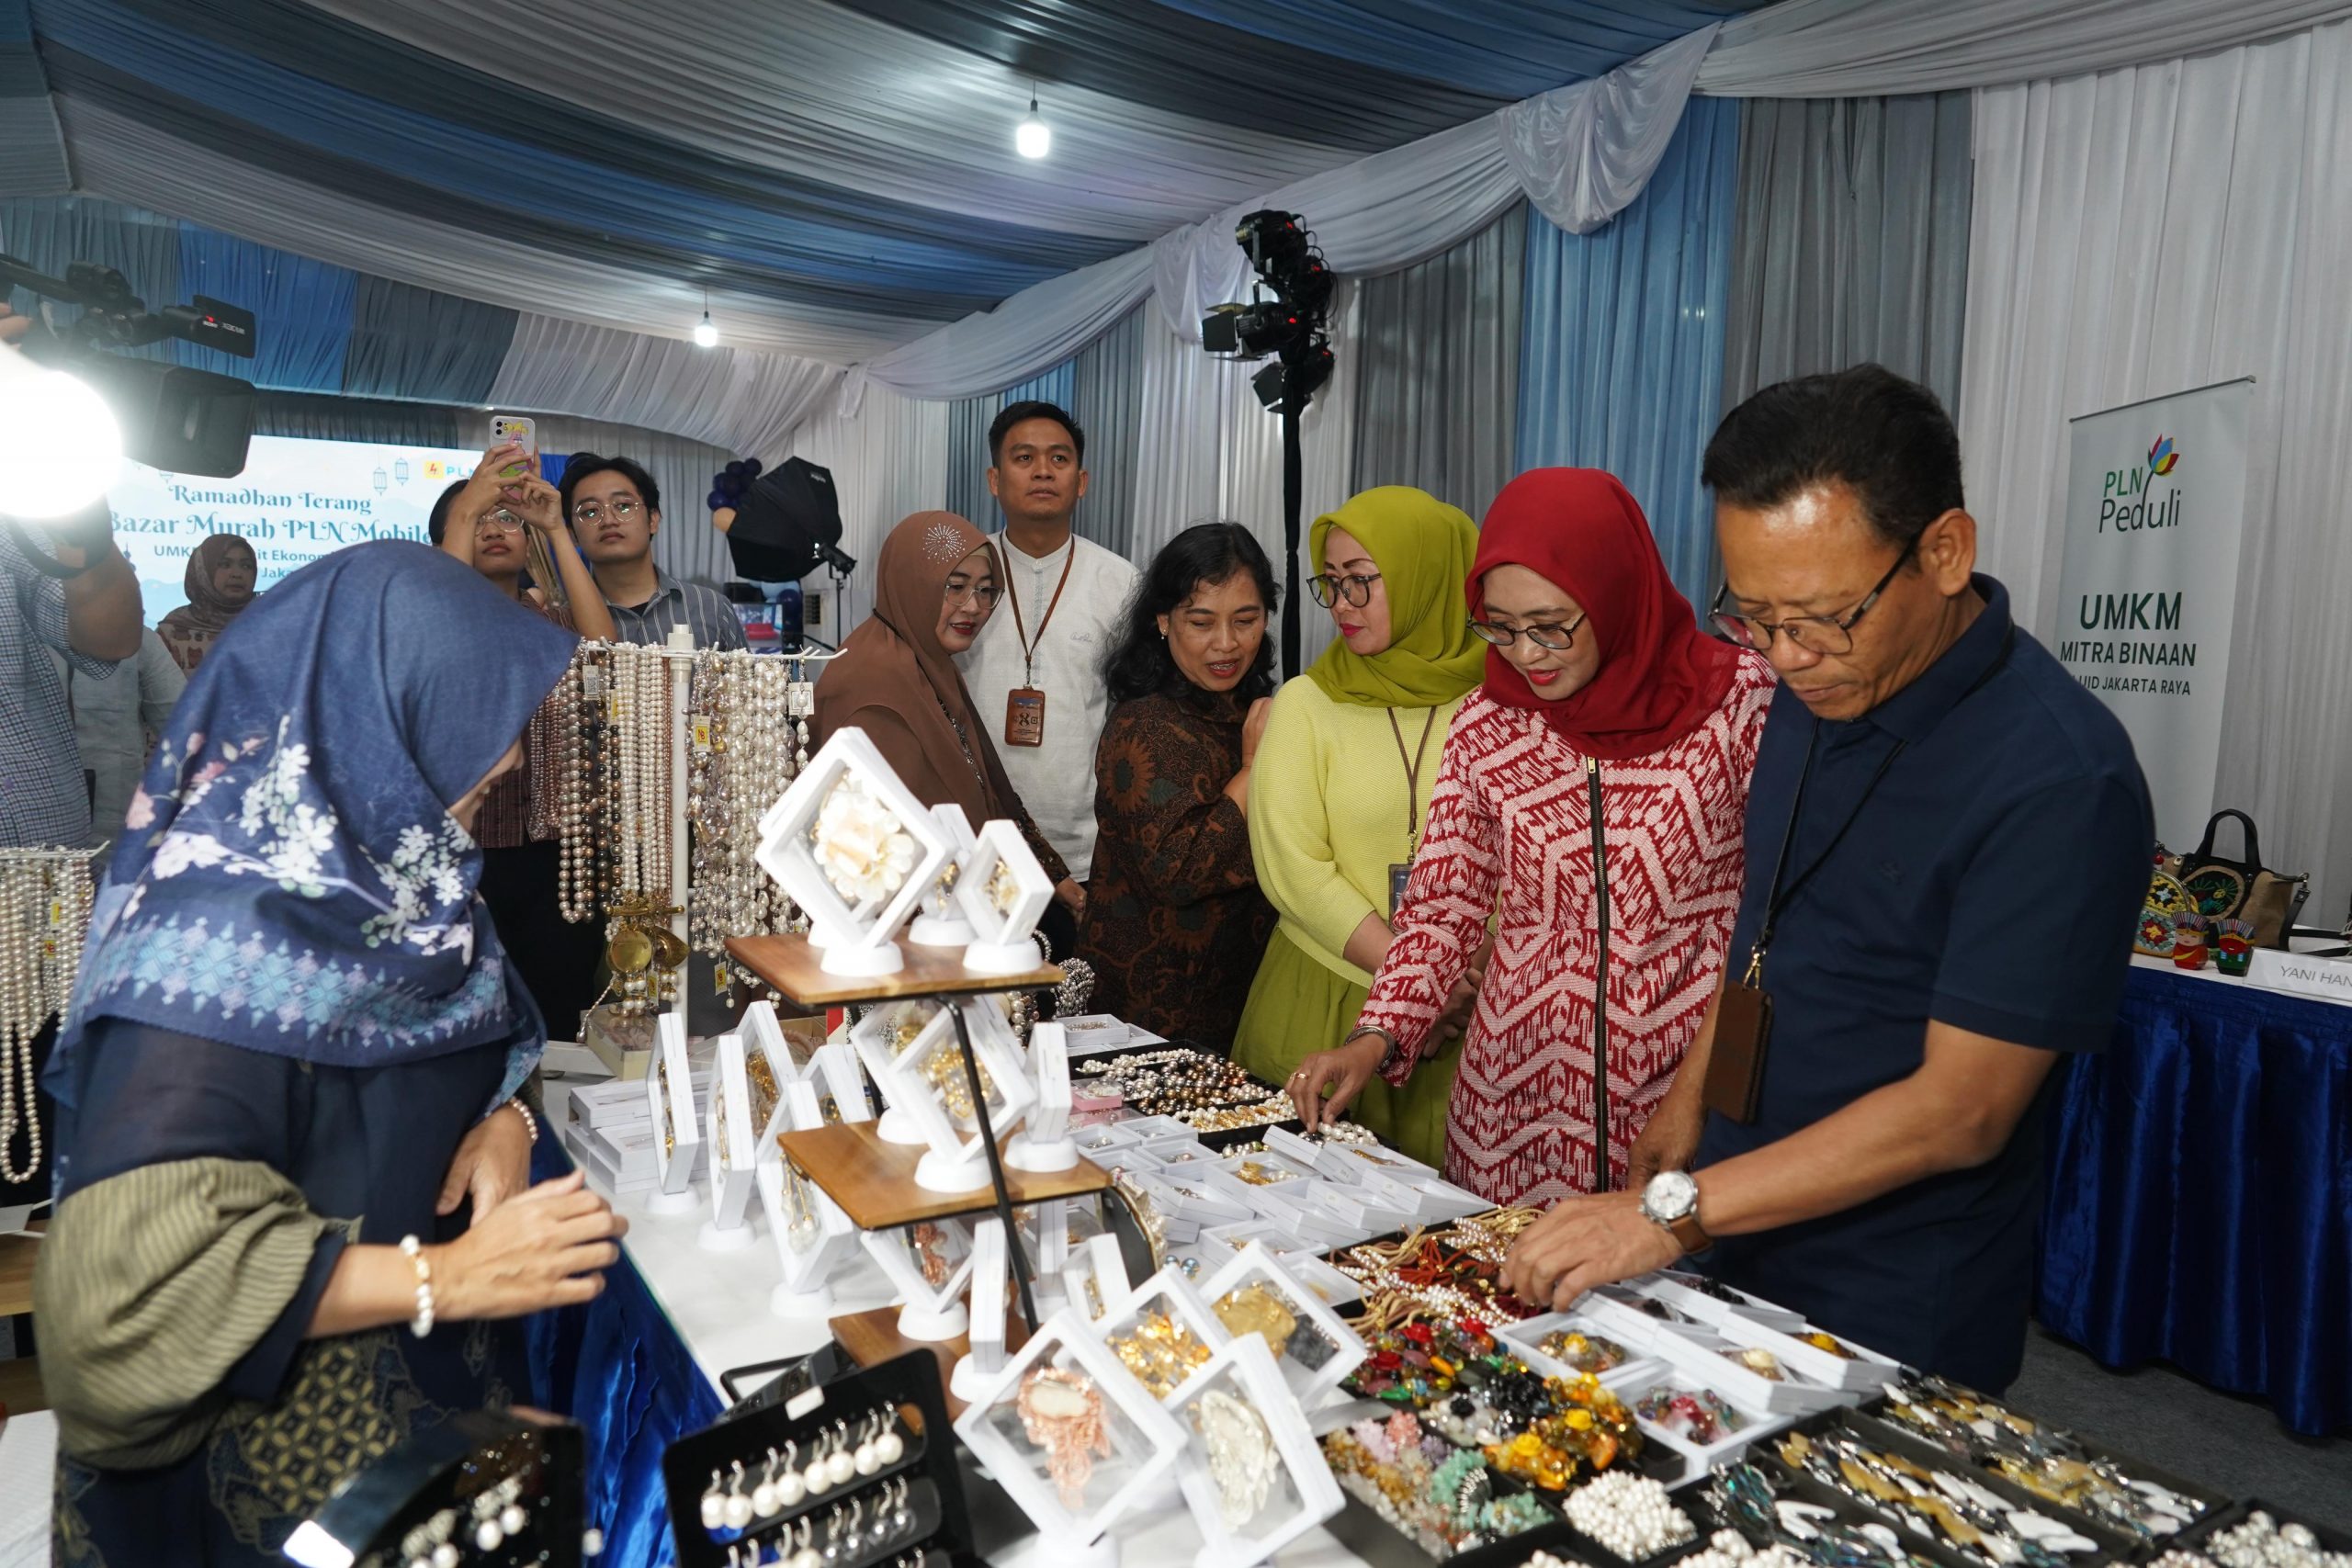 Berkah Ramadan Terang, PLN UID Jakarta Raya Salurkan 2250 Paket Sembako Melalui Bazar Murah